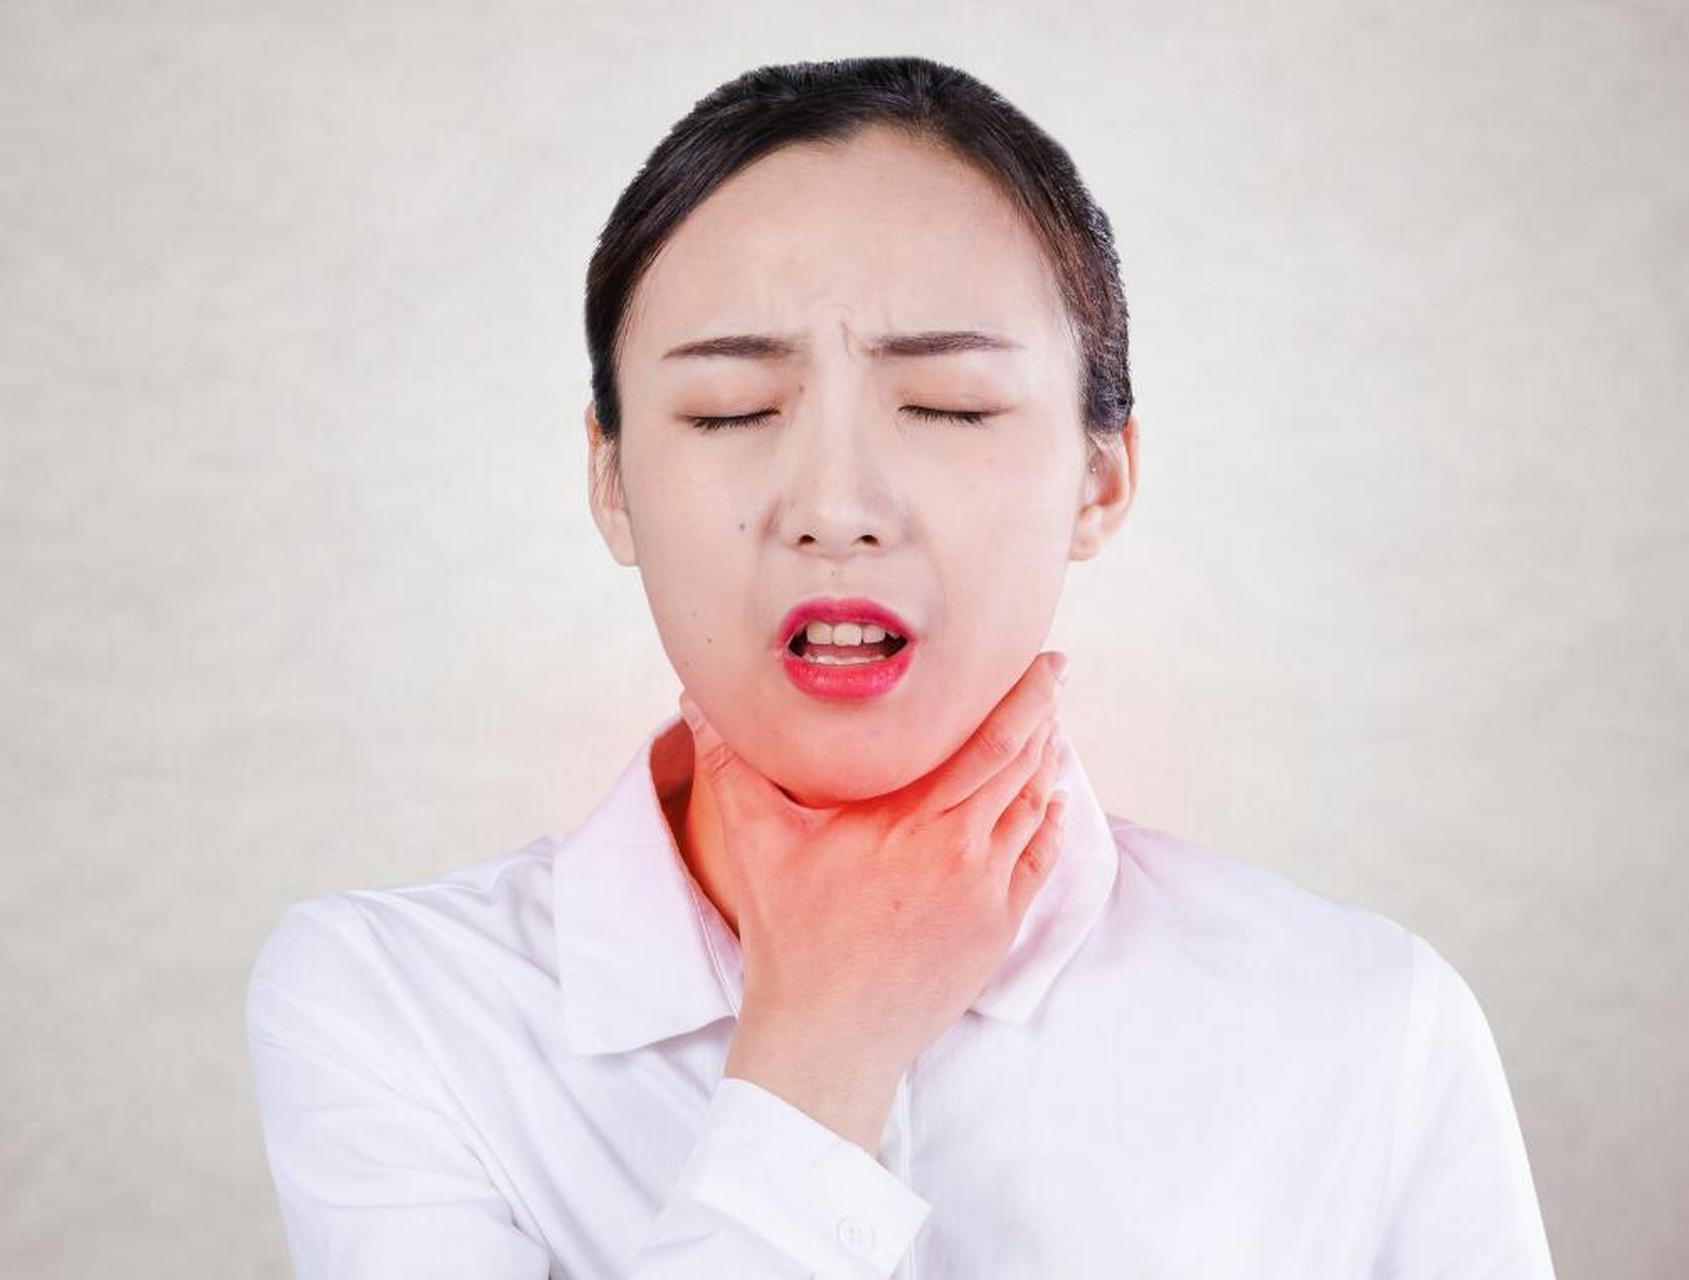 外感风寒证,大多有咽痛,口不渴,恶寒,不发热或微发热,咽部微红肿胀的